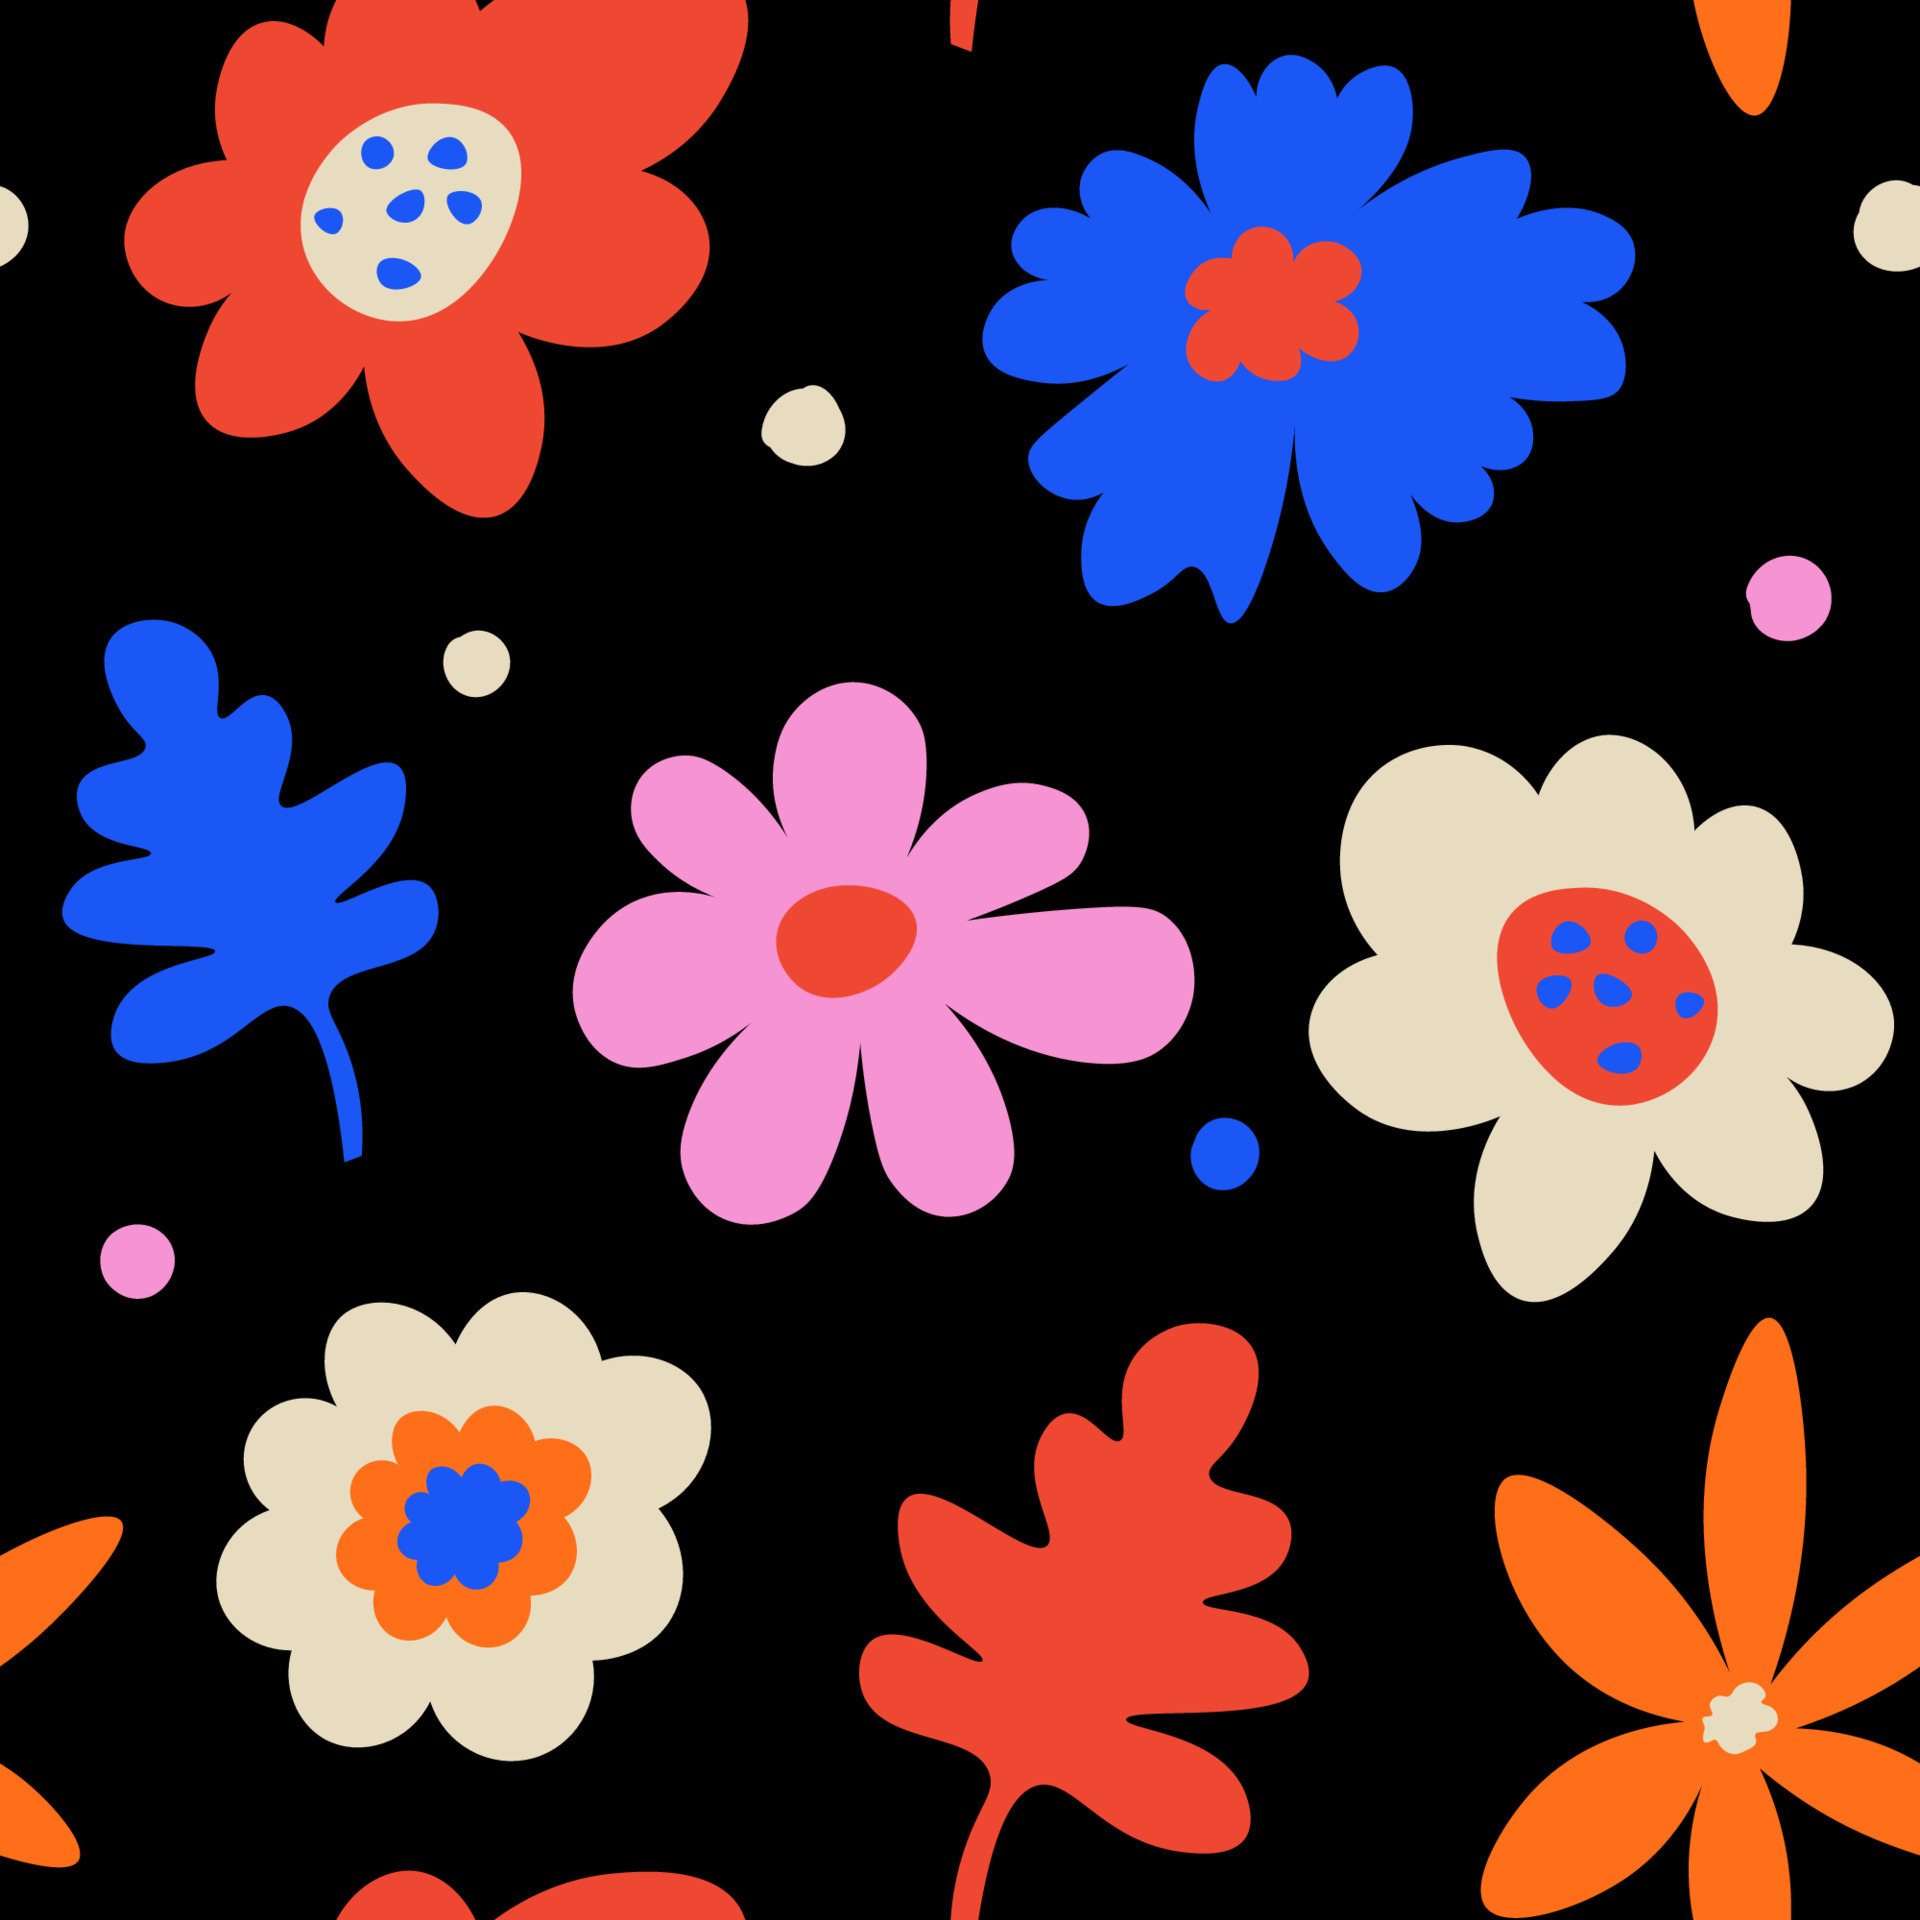 https://static.vecteezy.com/ti/vetor-gratis/p3/23375050-abstrato-mao-desenhado-peculiar-flores-colorida-floral-desatado-padronizar-em-uma-preto-fundo-vetor.jpg